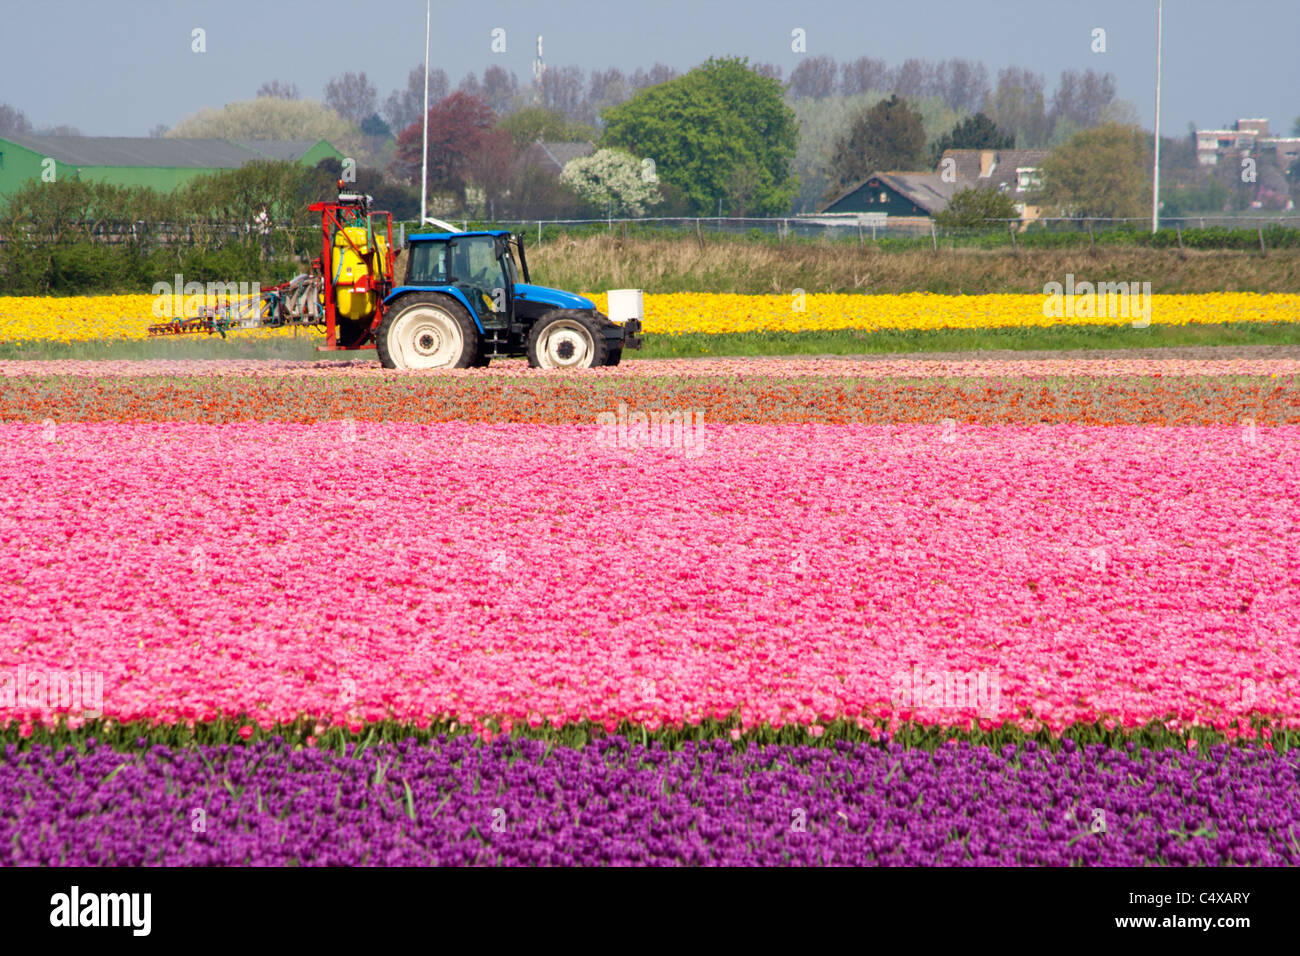 Tracteur pulvériser de l'eau dans un champ de tulipes en Hollande Banque D'Images